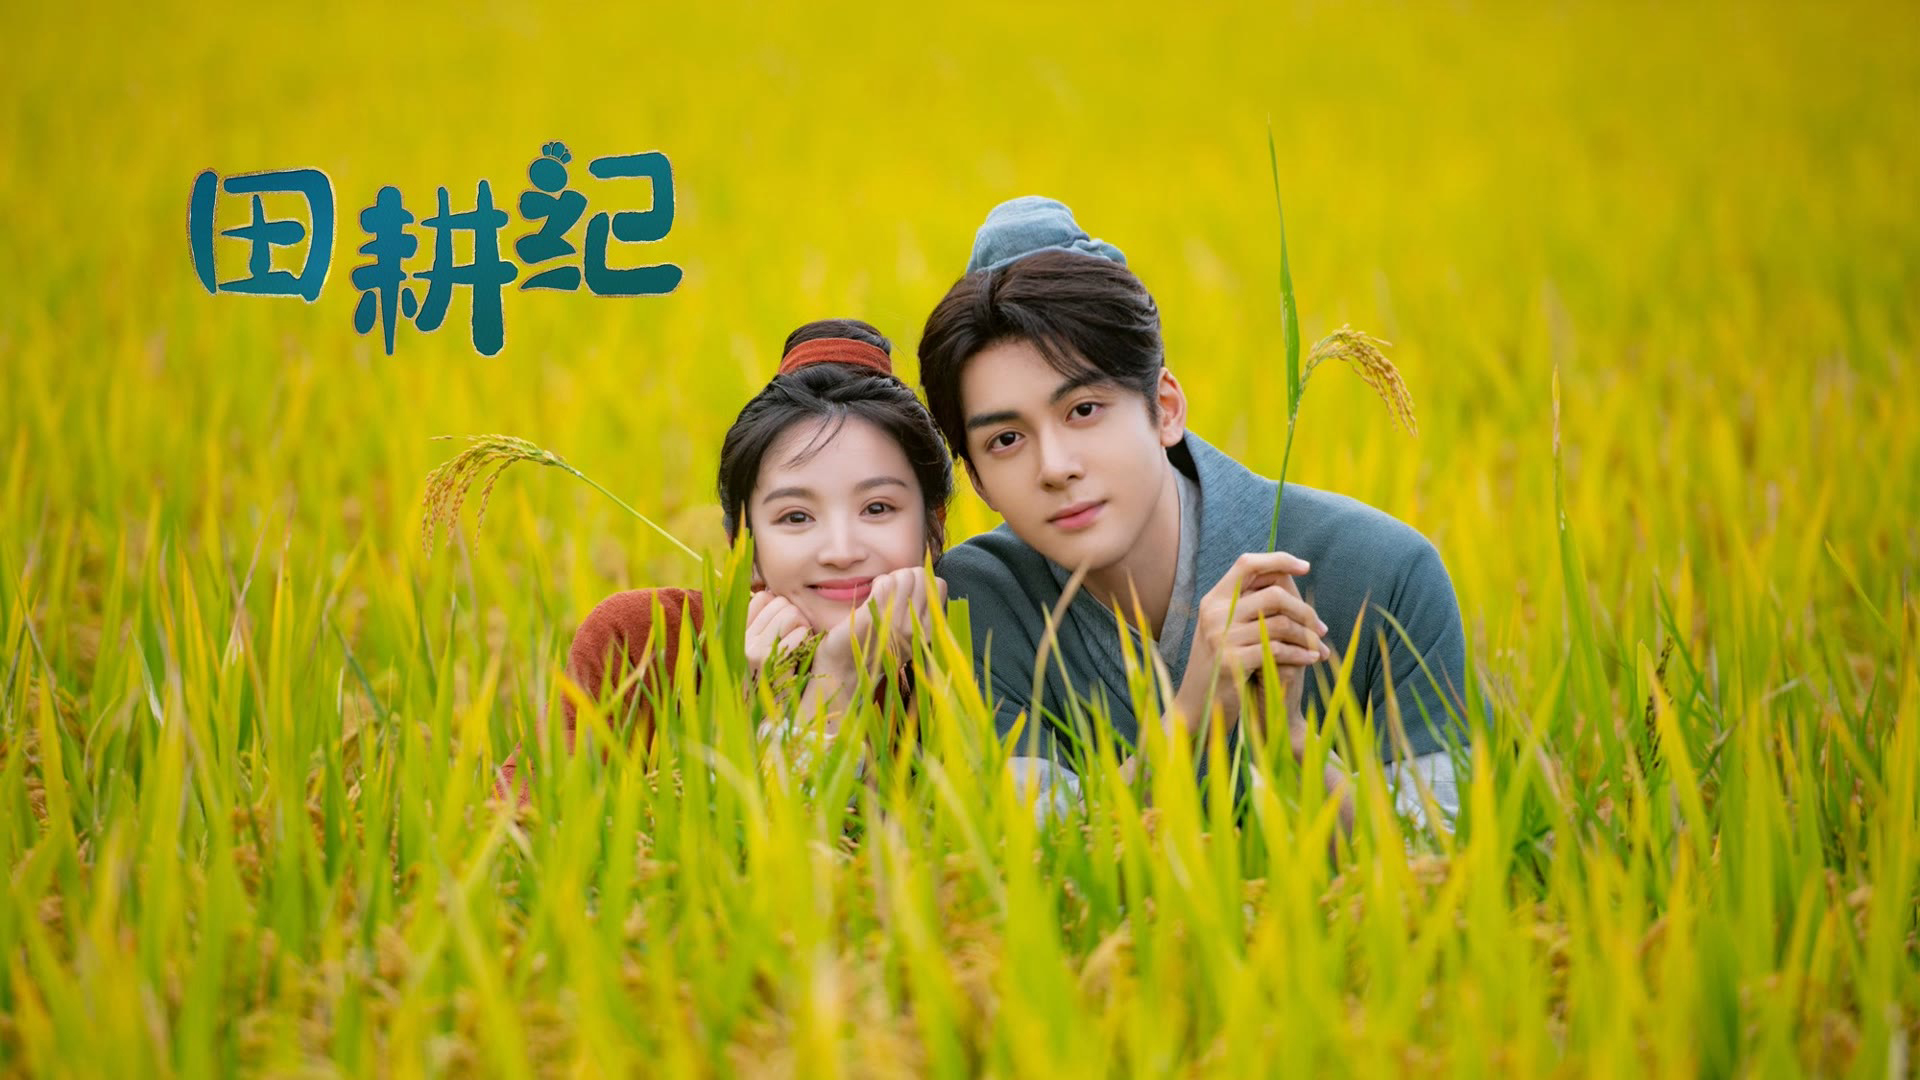 Banner Phim Điền Canh Kỷ (Romance on the Farm)